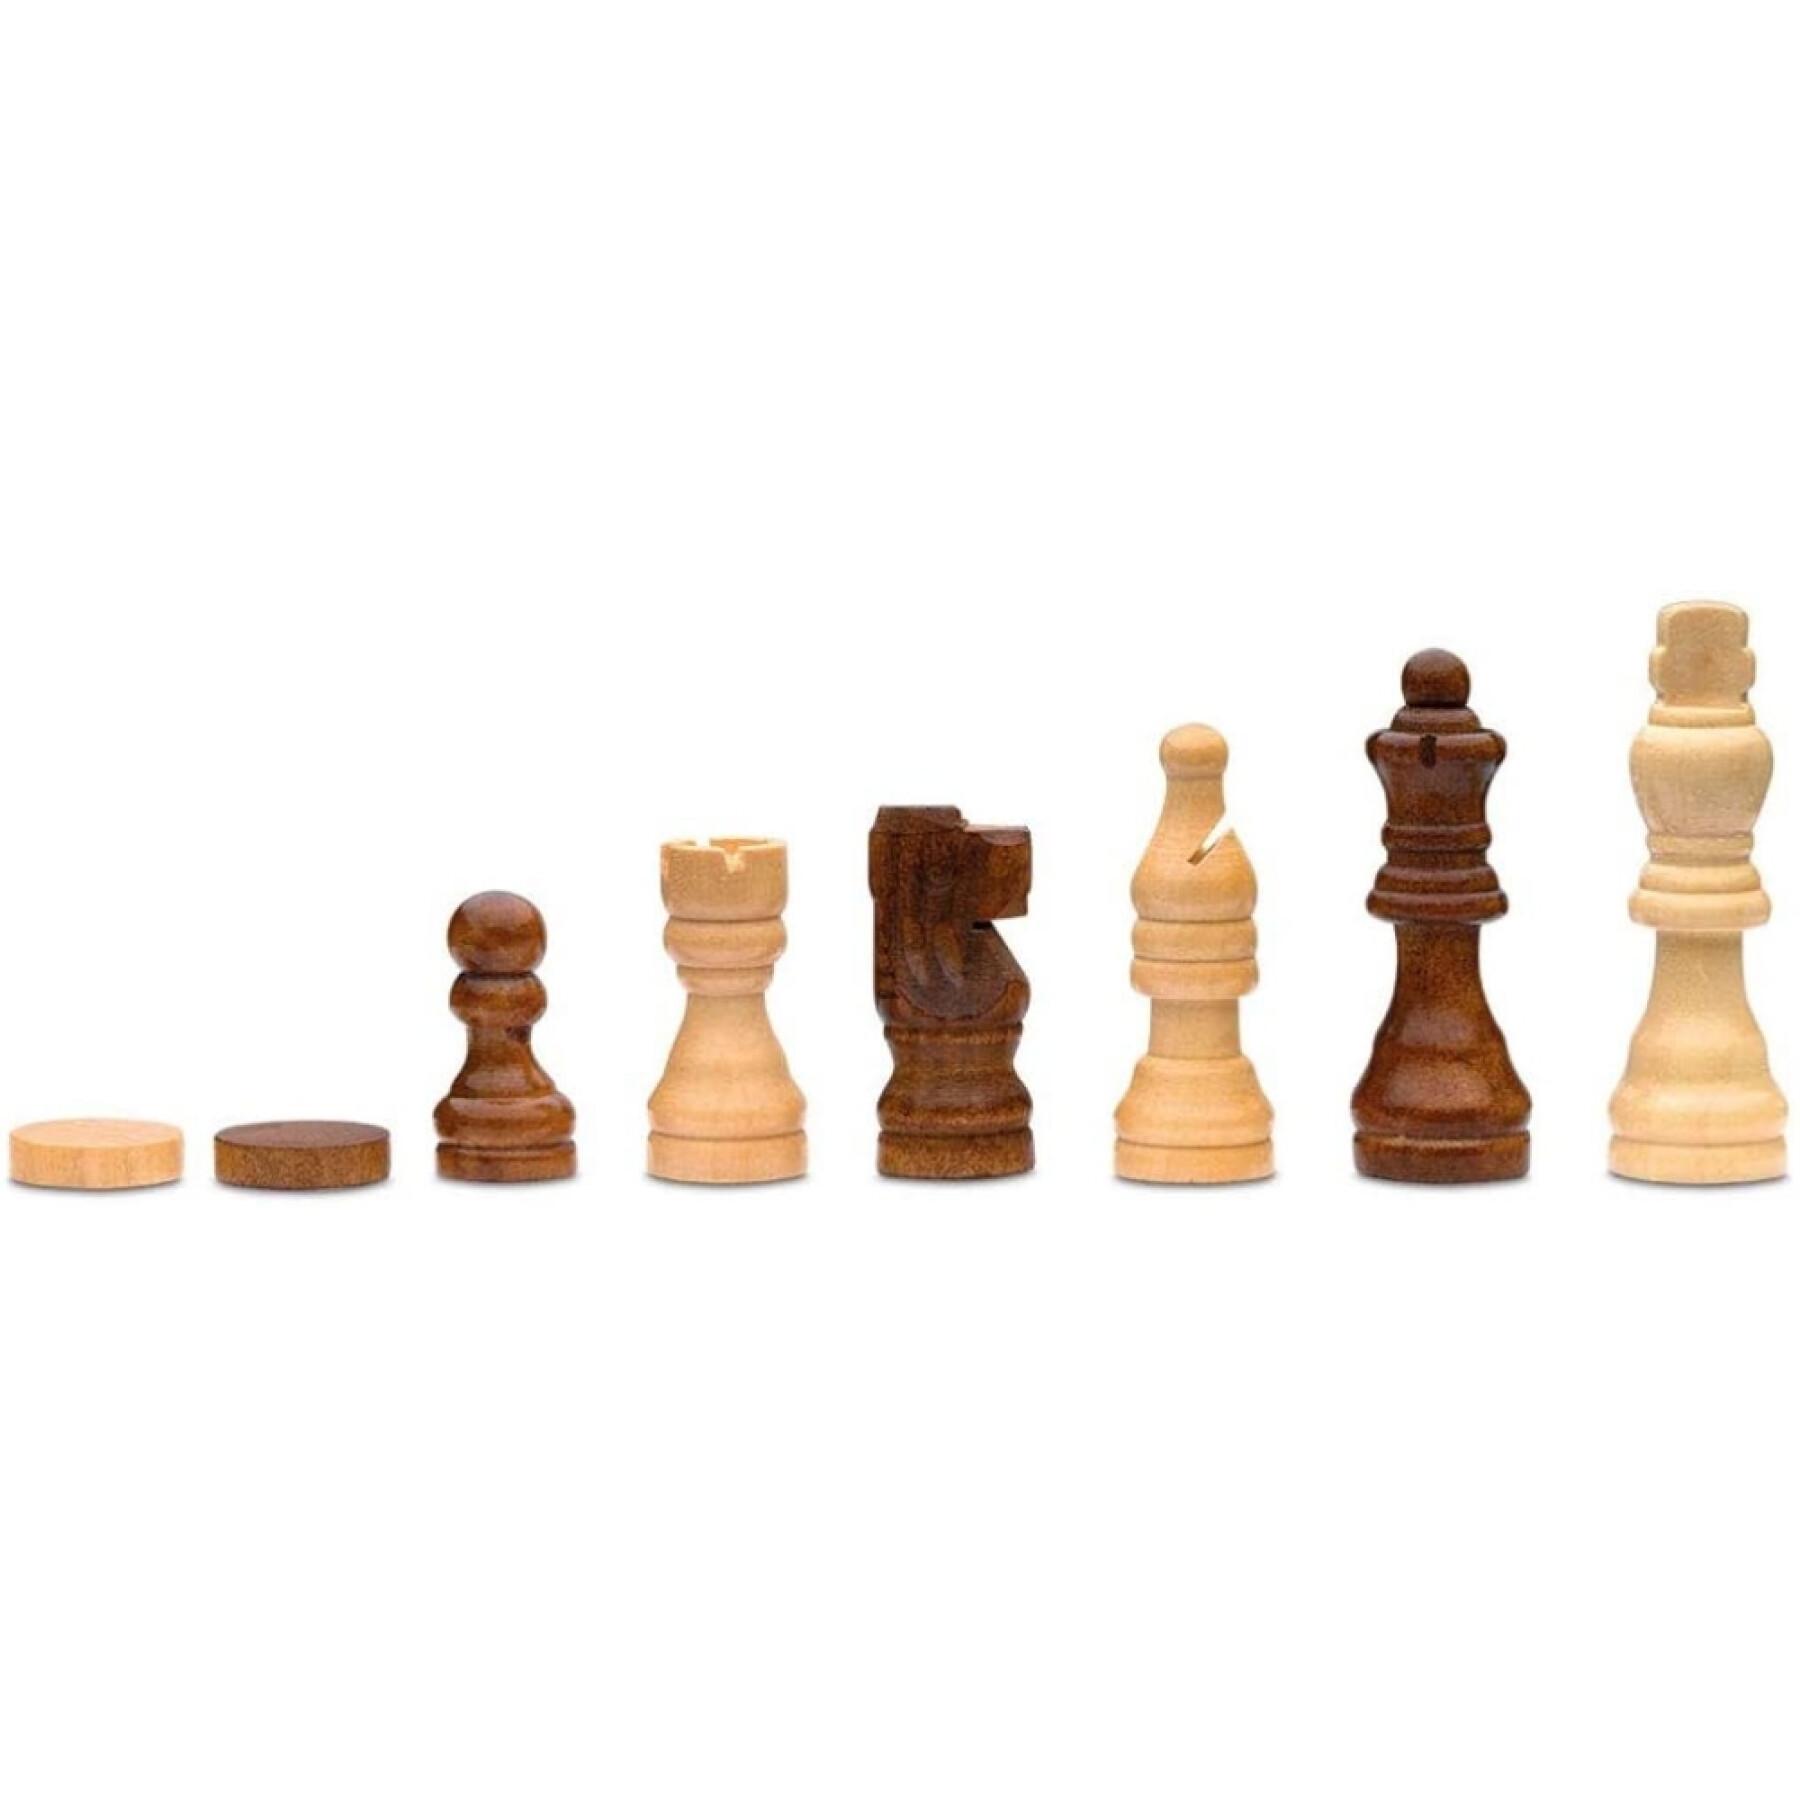 Juegos de ajedrez y backgammon de madera Cayro